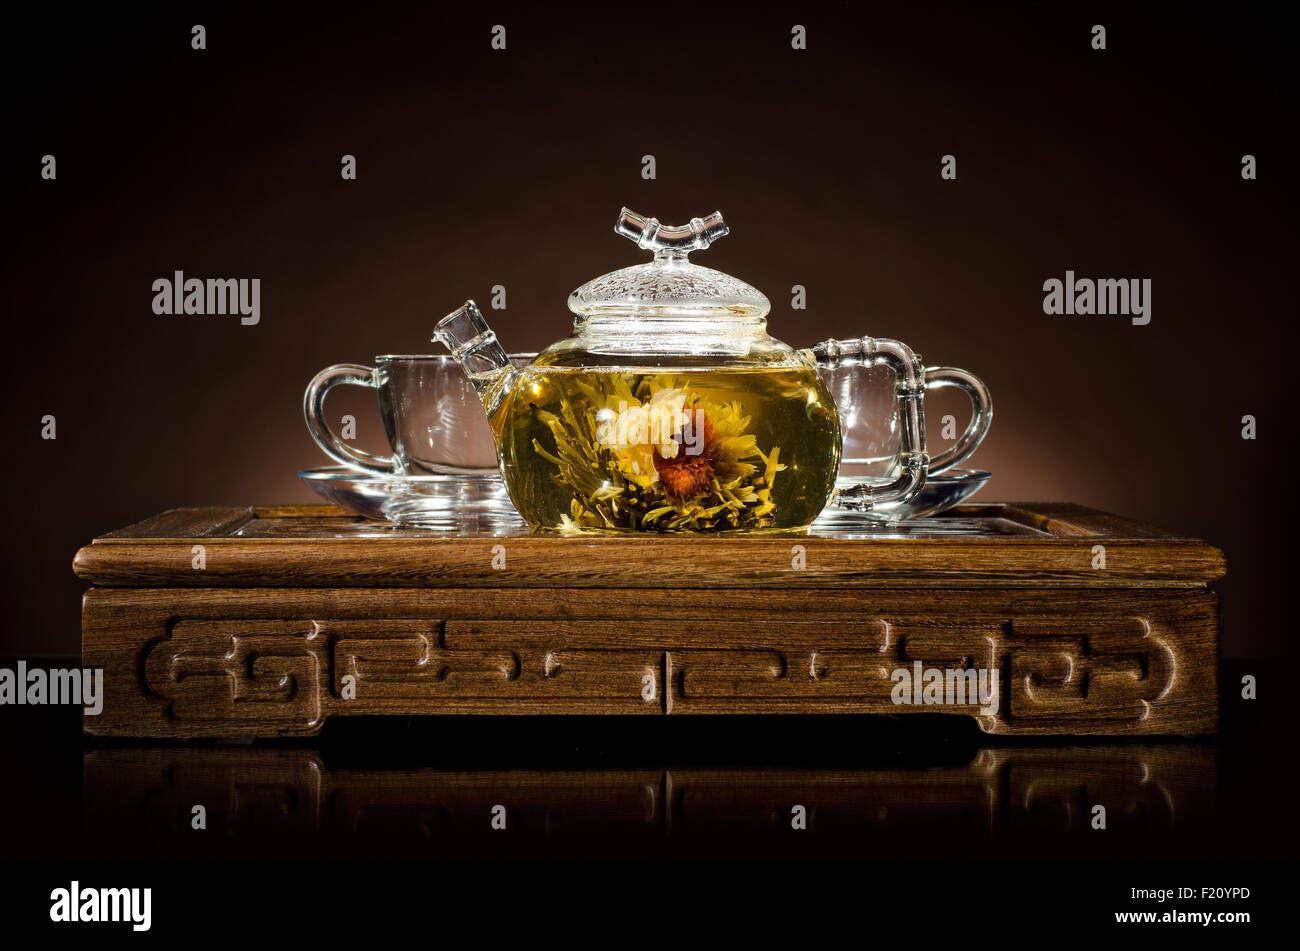 Photo horizontale de la théière en verre avec du thé vert dans la tasse, sur le backgrpund brun, gros plan Banque D'Images